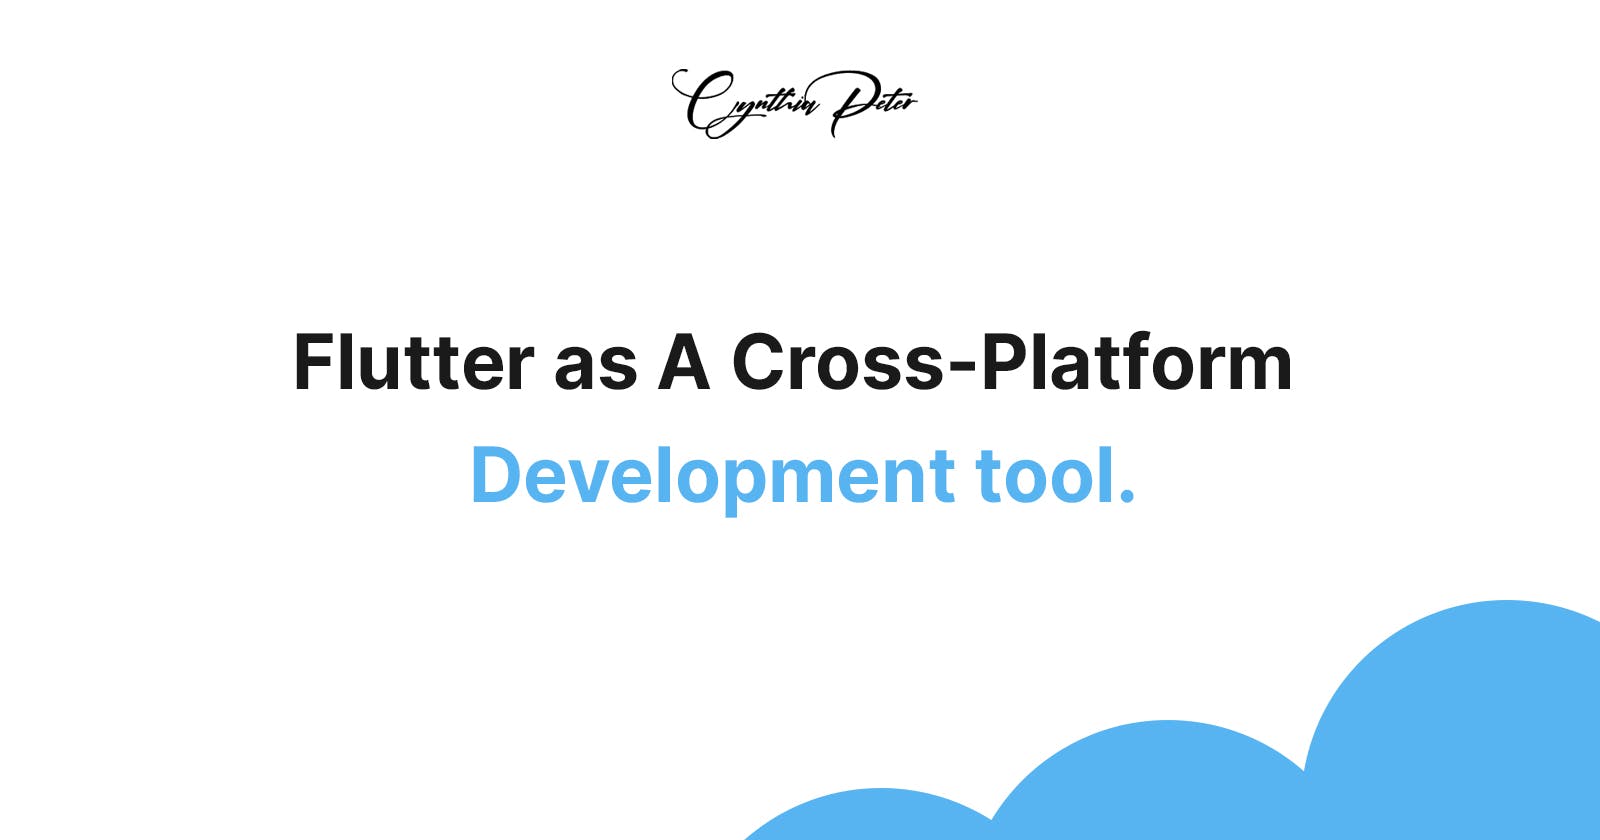 Advantages of Using Flutter as A Cross-Platform Development tool.